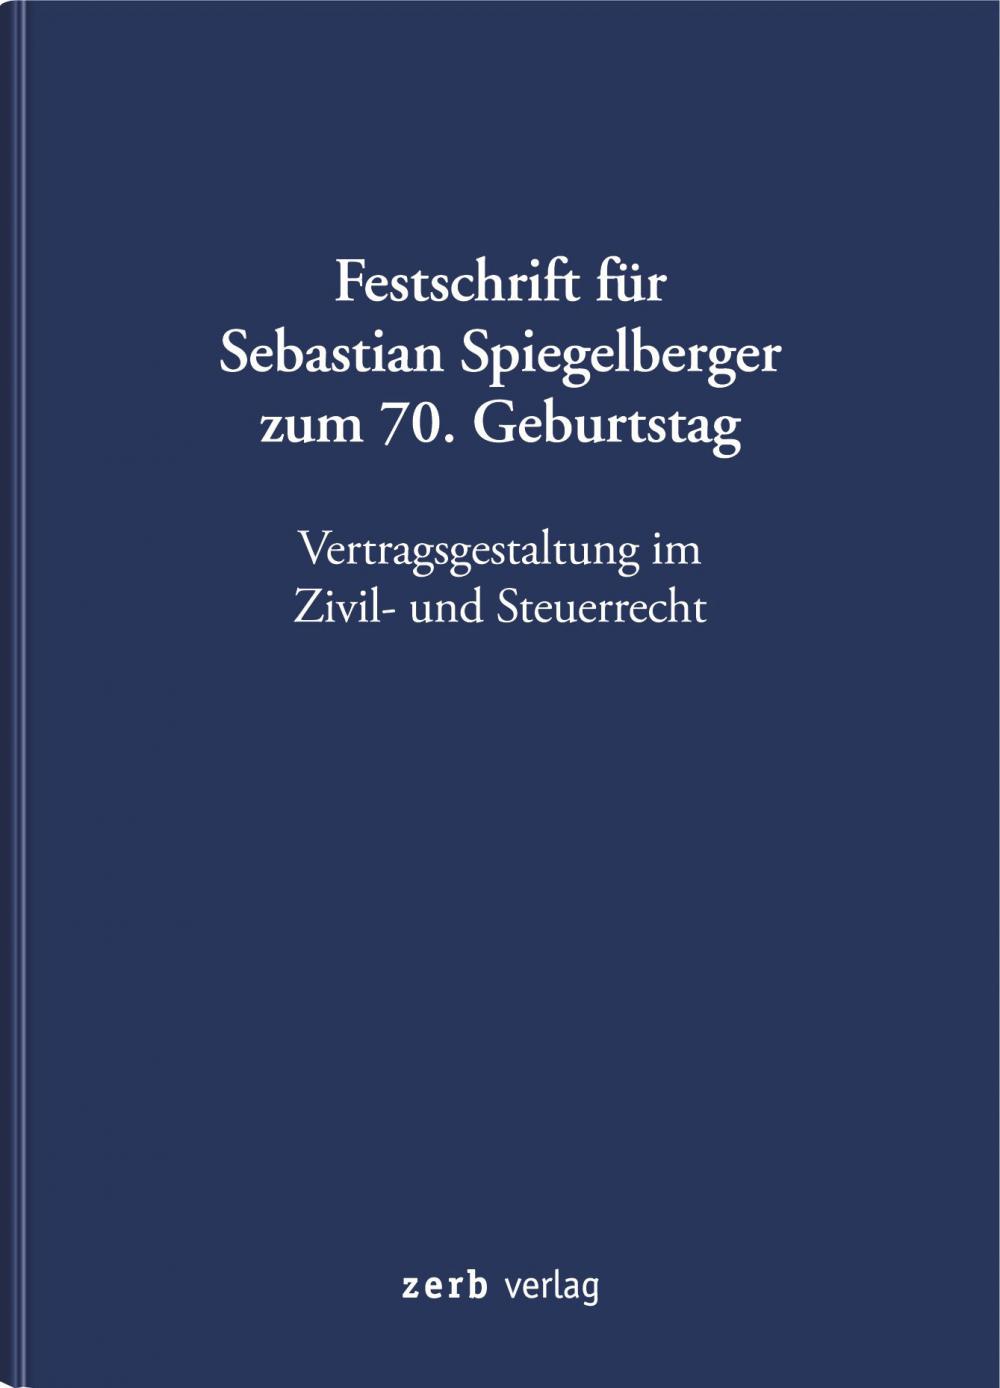 Vertragsgestaltung im Zivil- und Steuerrecht  (Festschrift für Sebastian Spiegelberger) title=